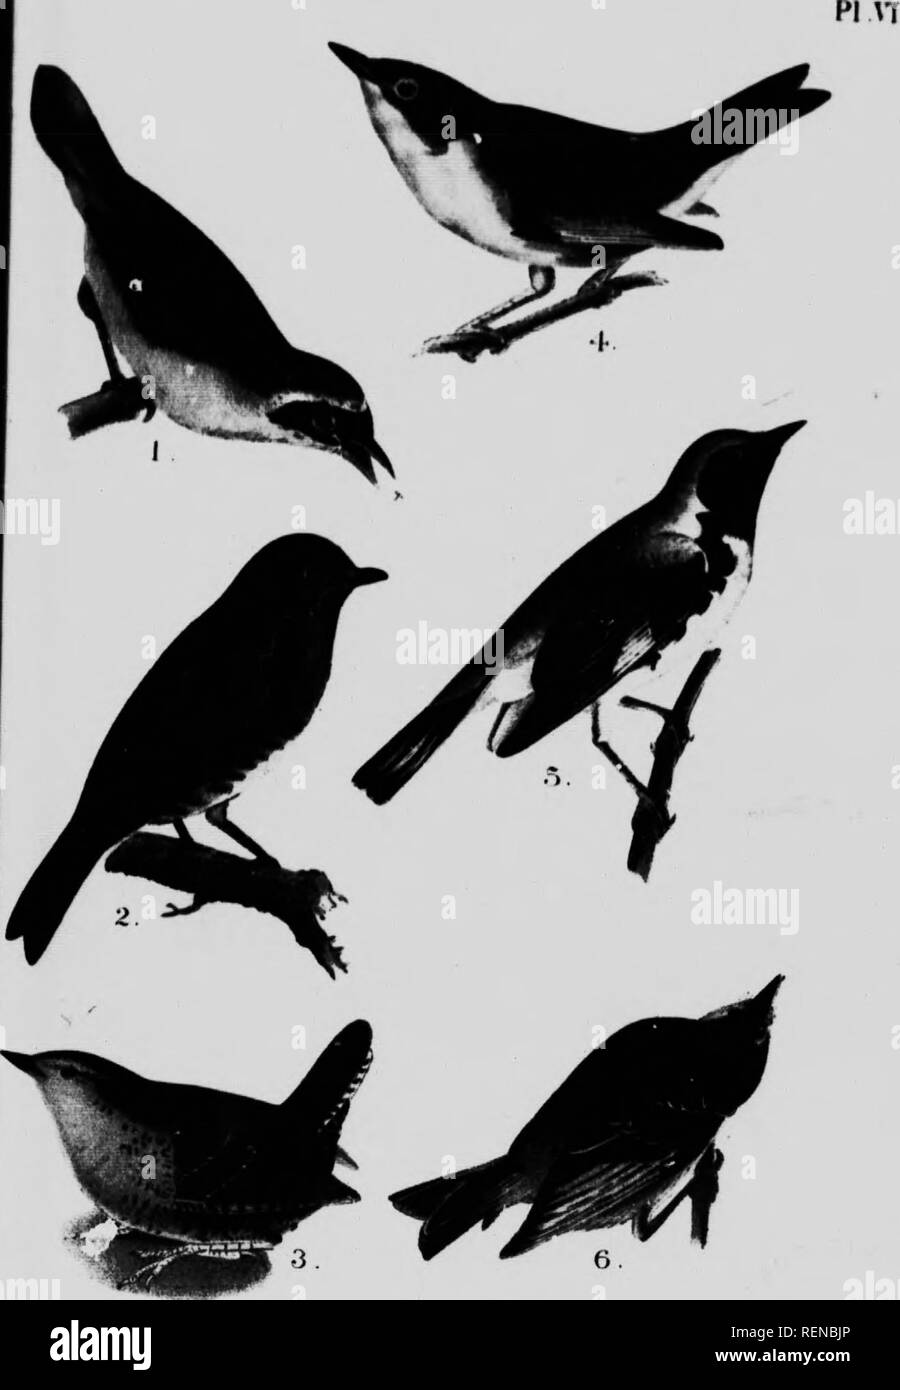 . Un popolare handbook degli uccelli del Canada e degli Stati Uniti [microformati]. Oiseaux; uccelli. ^ &gt;"arWand Yell""-montaggio passante"( - Bluebird. ' HiiUer Wren. 4 Nashville n-Hrblcr 5. BIack-Thp"ftted B1"B Trillo 6 . Rubv-Crow-ned Kinglet.. Si prega di notare che queste immagini vengono estratte dalla pagina sottoposta a scansione di immagini che possono essere state migliorate digitalmente per la leggibilità - Colorazione e aspetto di queste illustrazioni potrebbero non perfettamente assomigliano al lavoro originale. Nuttall, Thomas, 1786-1859; Chamberlain, Montague, 1844-1924. Toronto : Musson Foto Stock